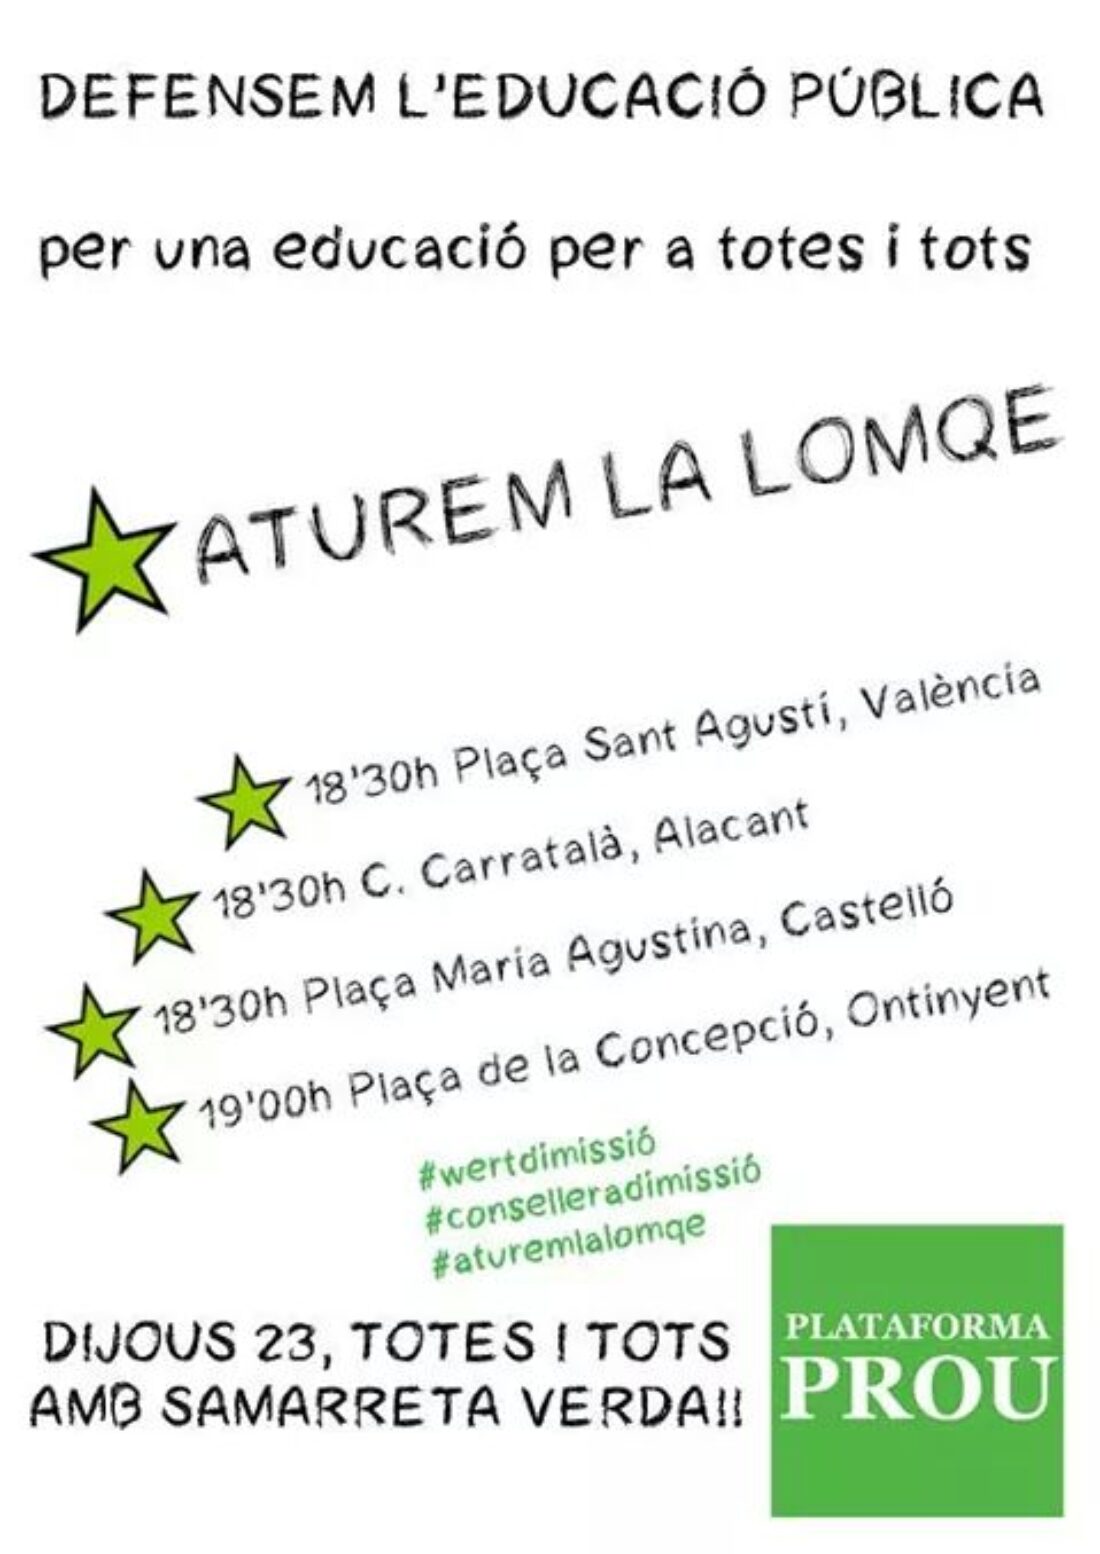 23-o País Valencià: Manifestaciones en defensa de la educación pública